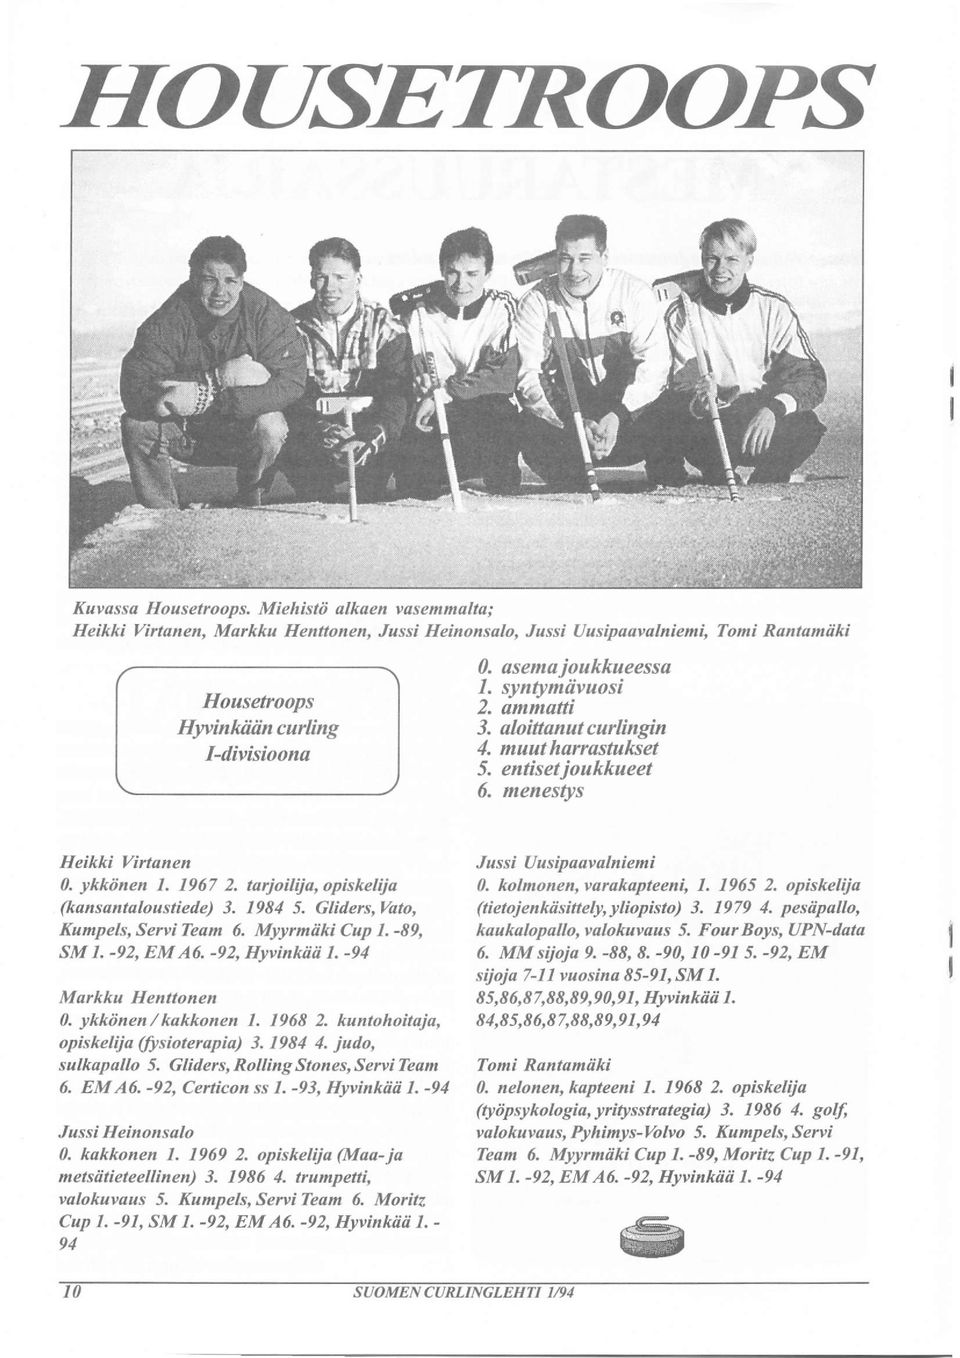 syntymiivaosi 2. ammatti 3. aloittanut curlingin 4. muut harrastukset 5. entisetjoukkueet 6. menestys Heikki Virtanen 0. ykkönen I. 1967 2. tarjoilija, opiskelija (kansantaloustiede) 3. 1984 5.